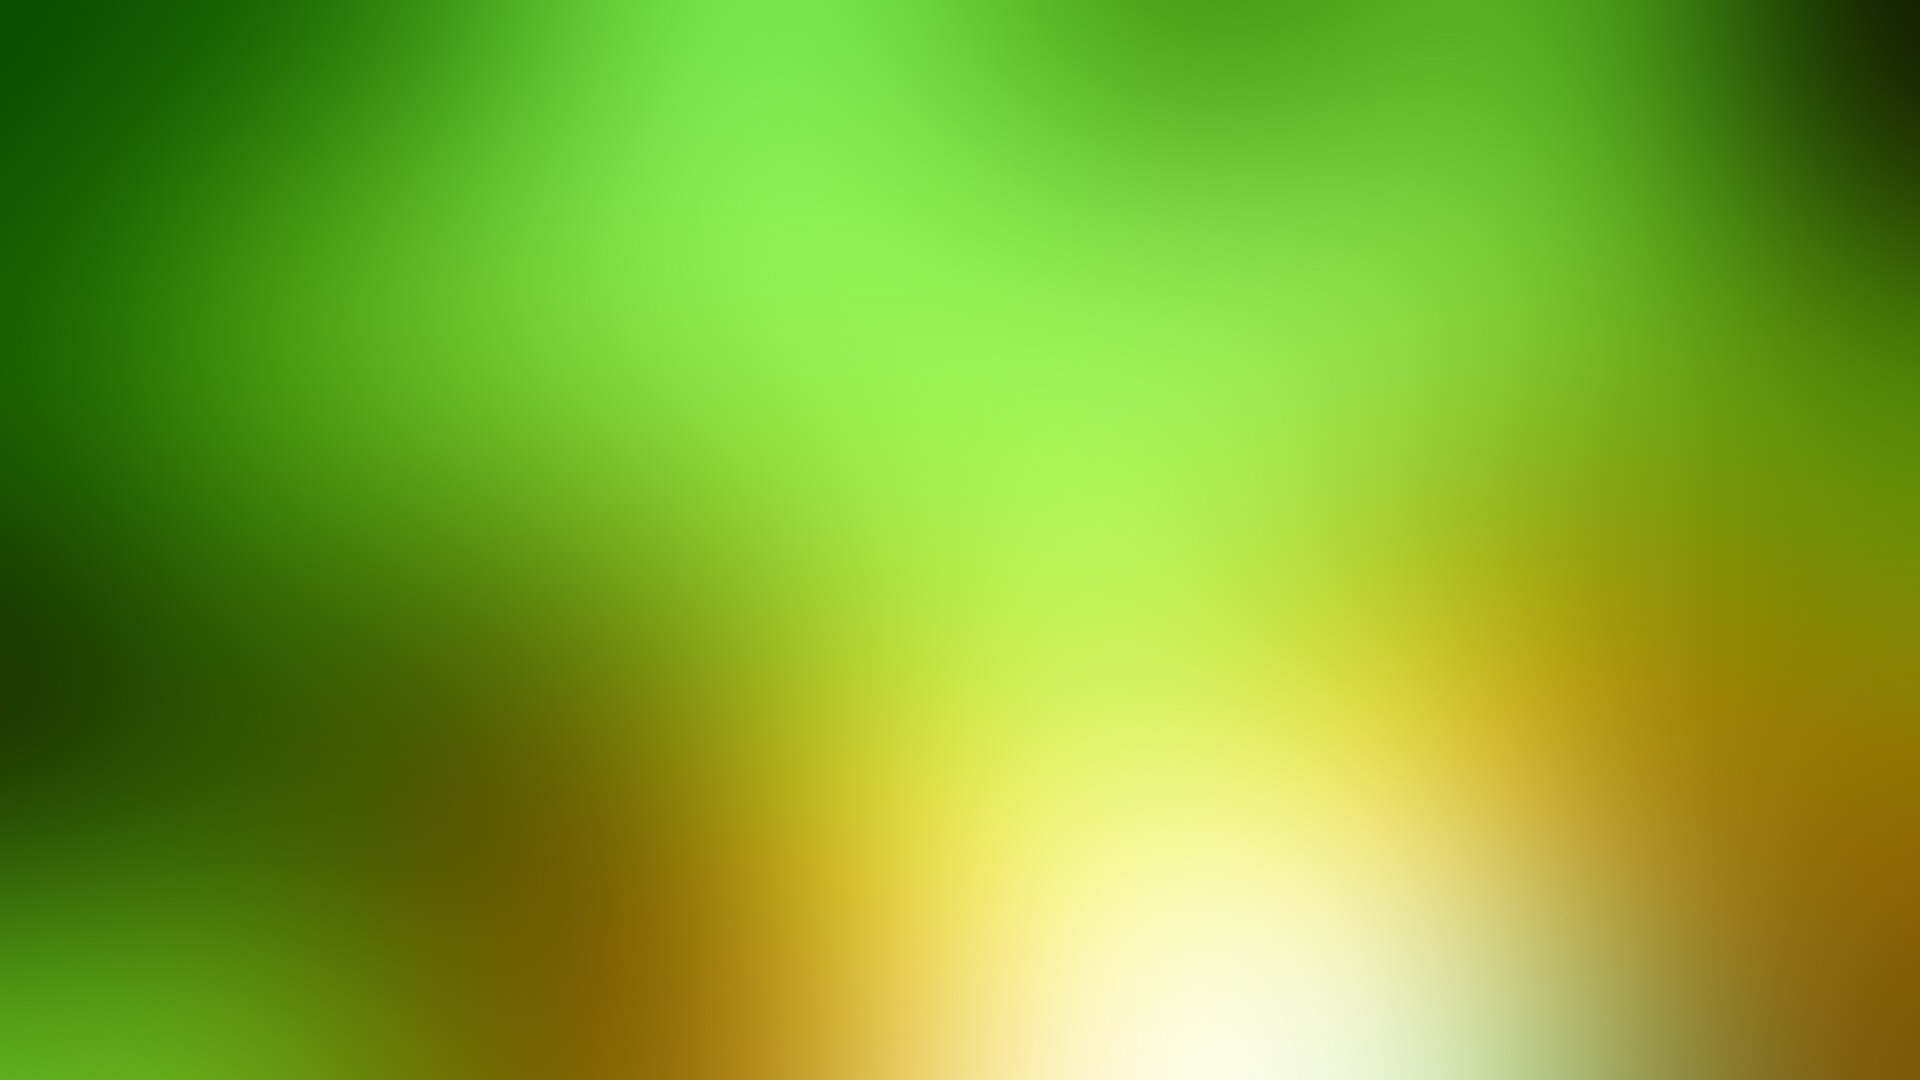 1920x1080 Wallpaper Green, Yellow, White, Spot